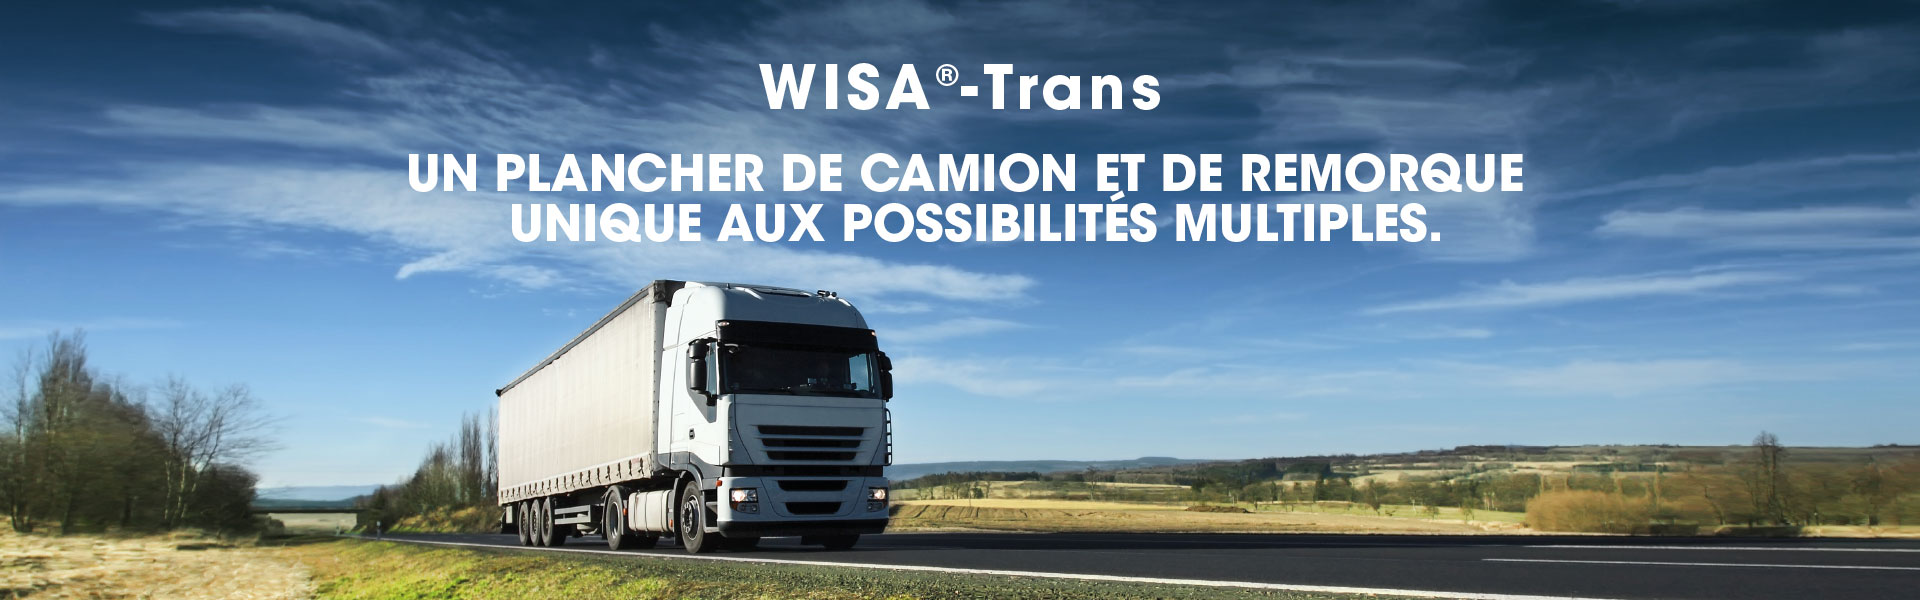 wisa-trans